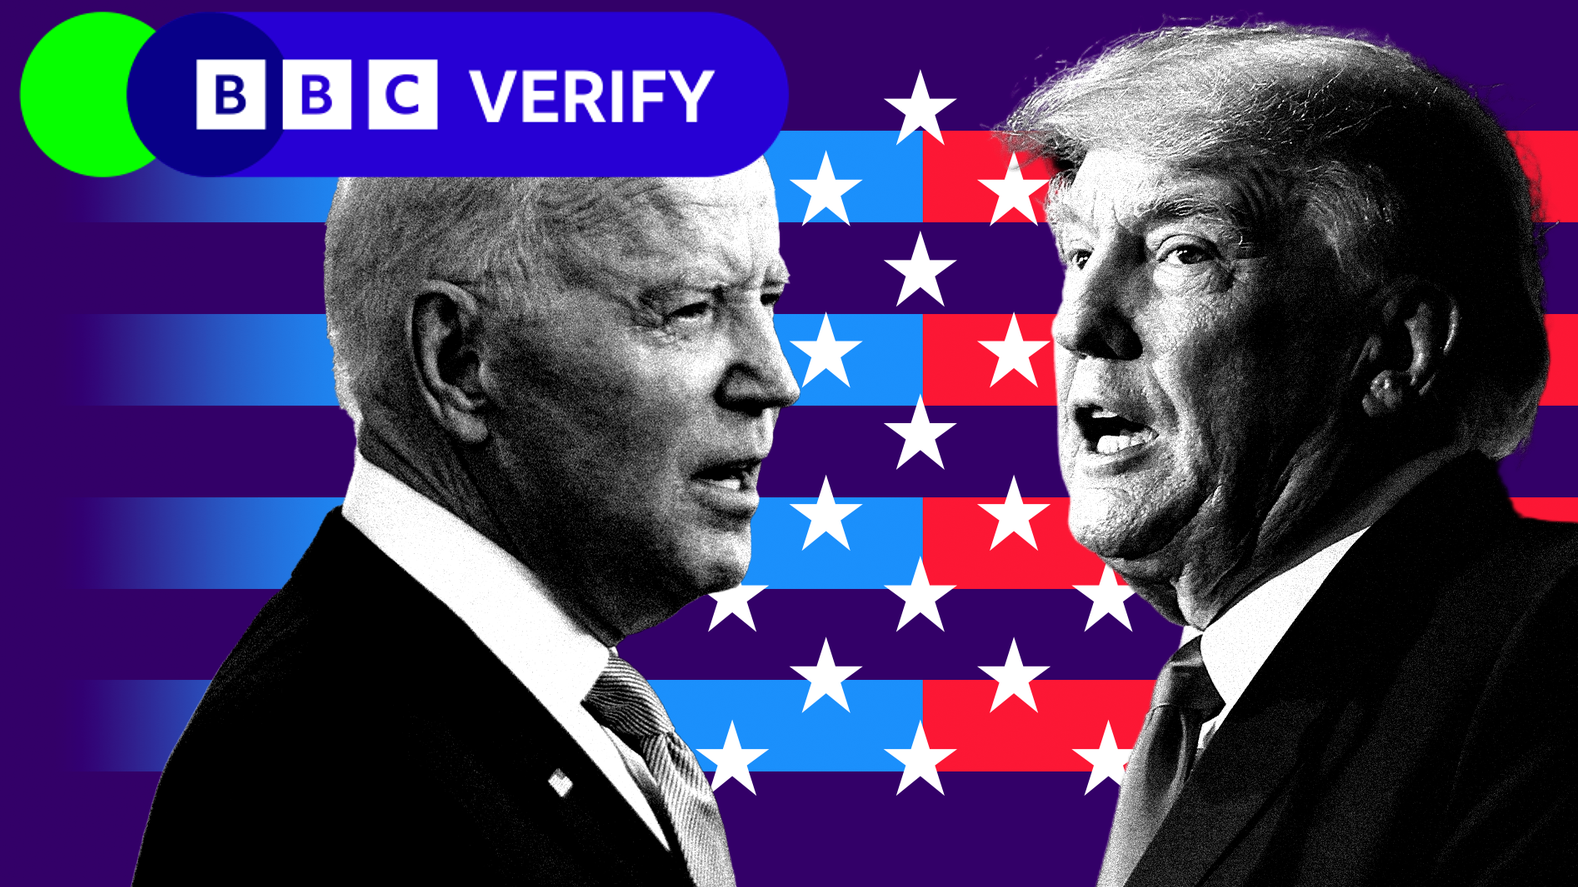 Montaje de imágenes de Joe Biden y Donald Trump, con gráficos en el fondo que aluden a la bandera de EE.UU. y la marca de BBC Verify